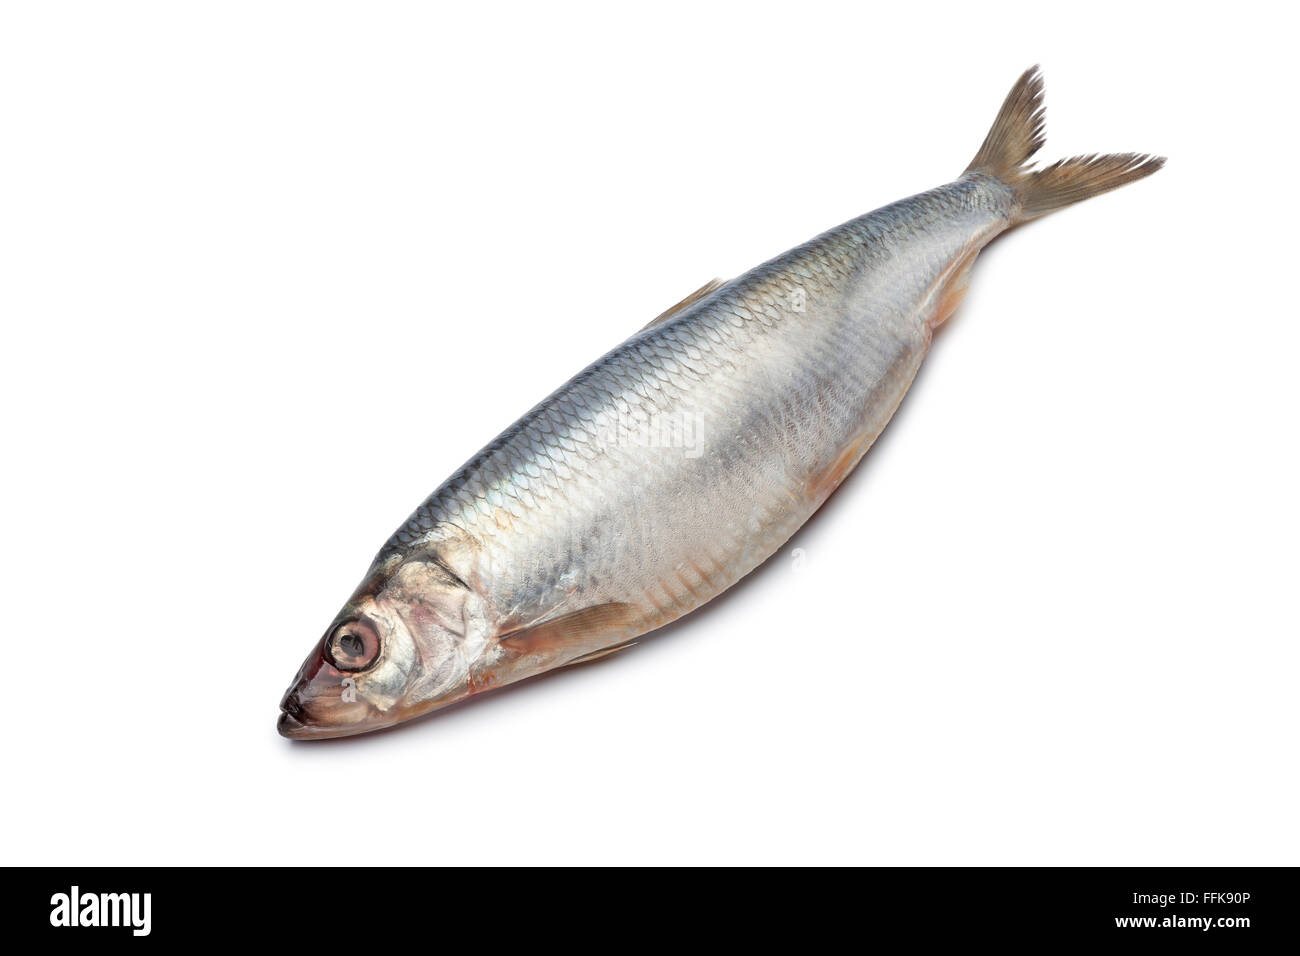 Whole single fresh raw herring isolated on white background Stock Photo